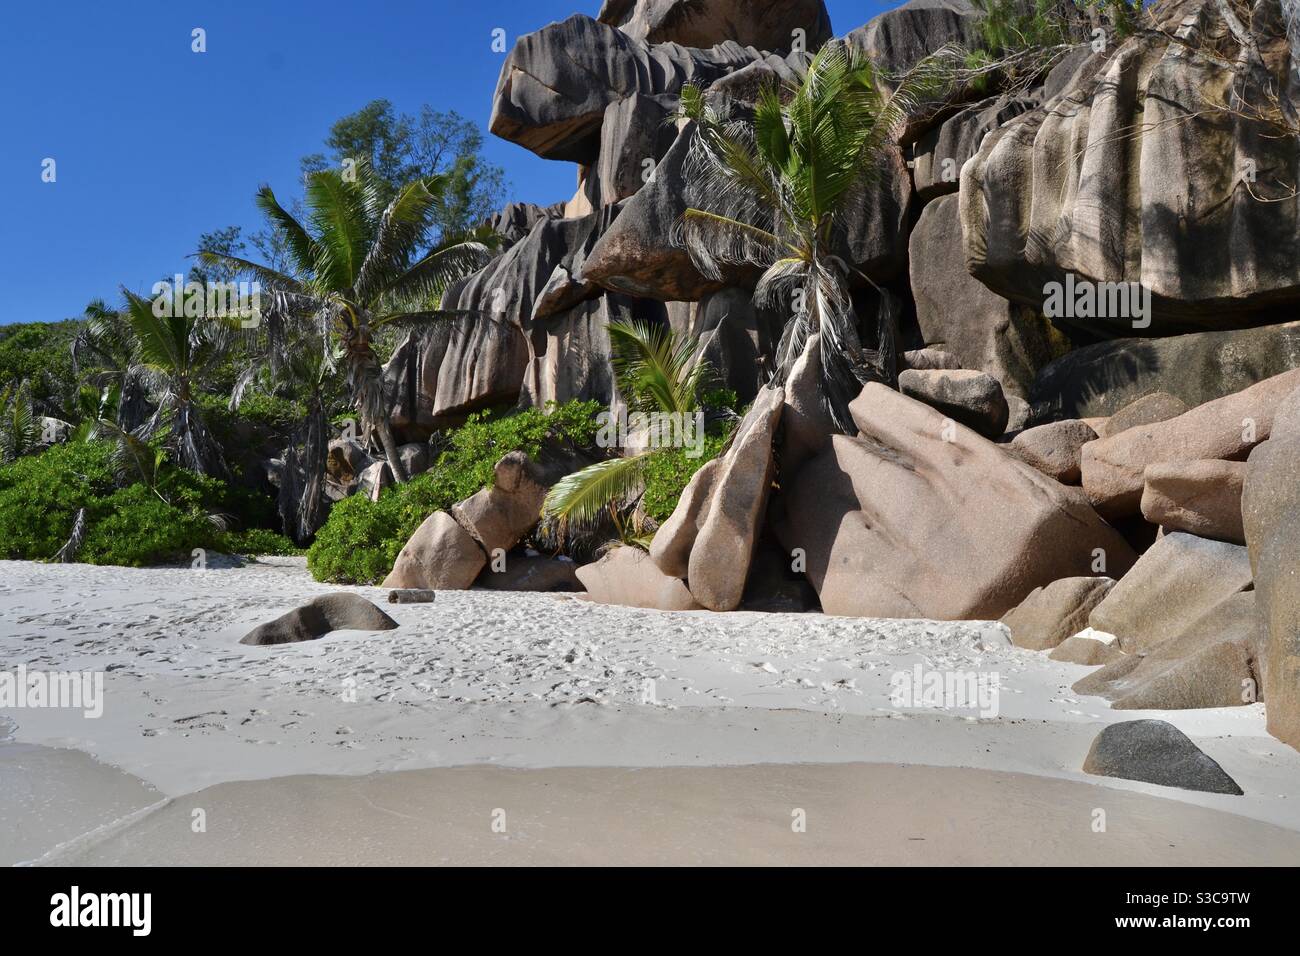 Magischer und idyllischer tropischer Strand im exotischen Paradies La digue mit Palmen, Sand und Felsbrocken auf den Seychellen bei strahlendem Sommersonnenschein. Stockfoto